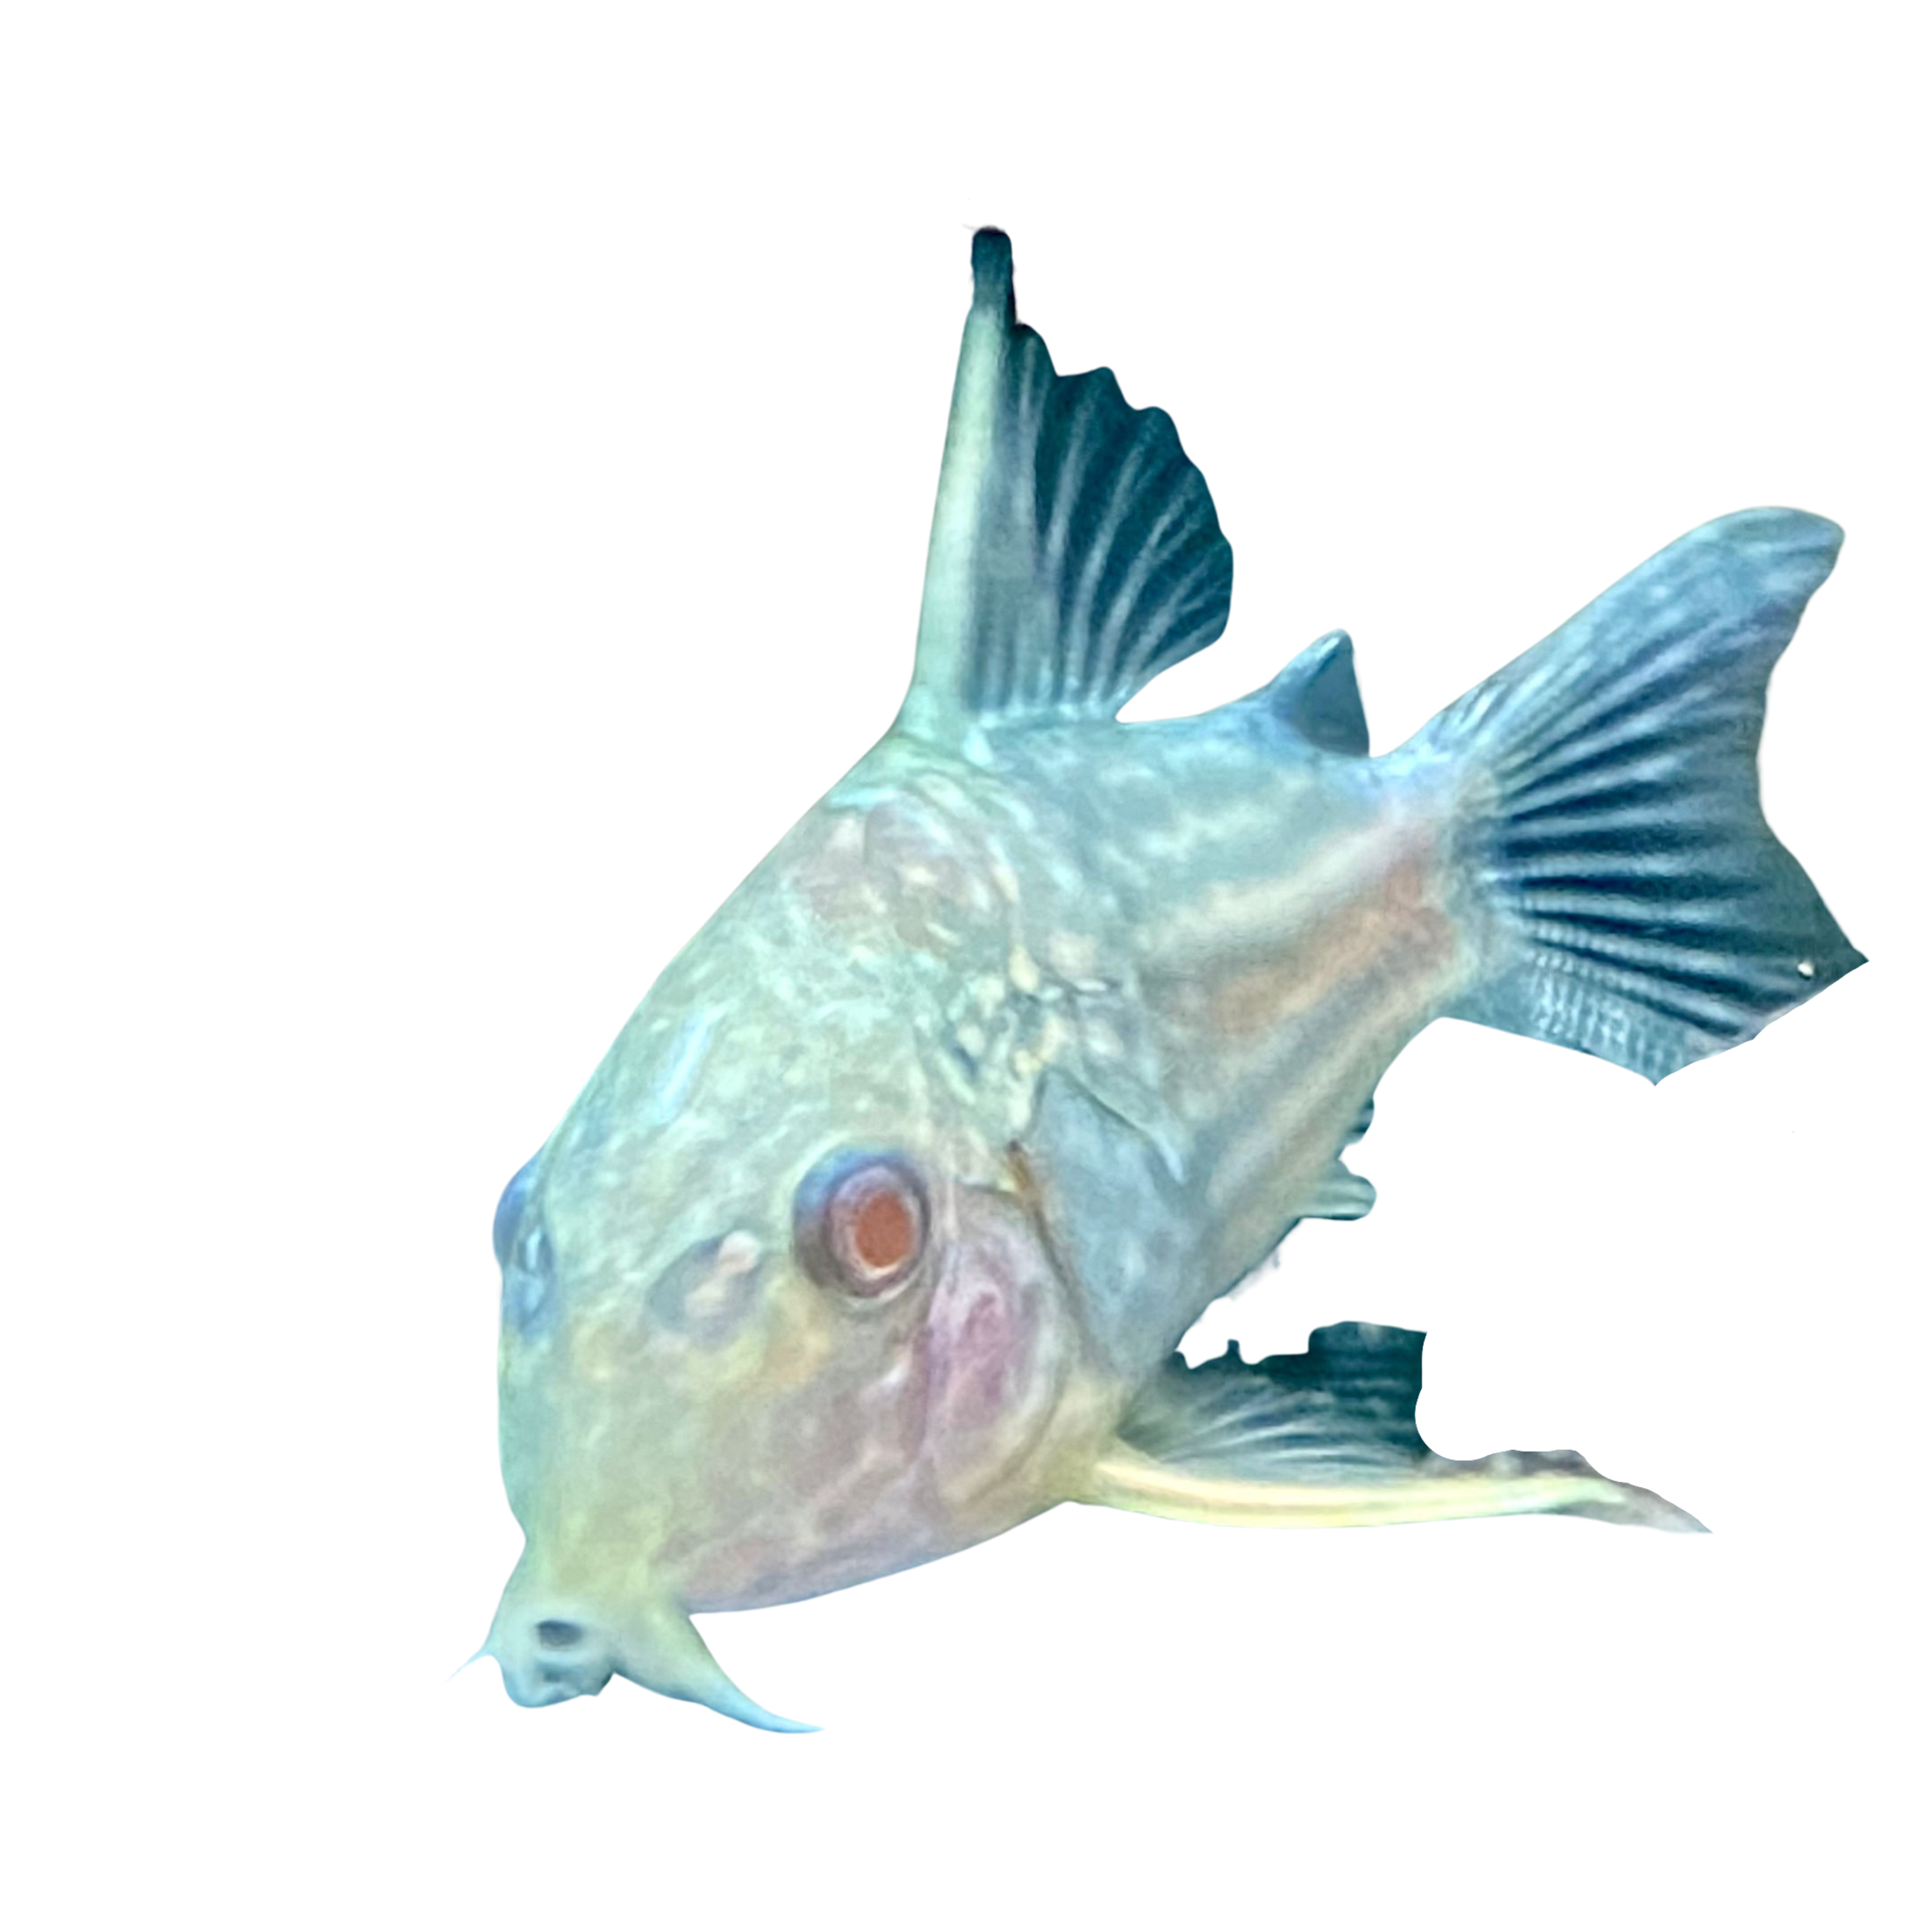 Albino Sterbai Corydora Catfish